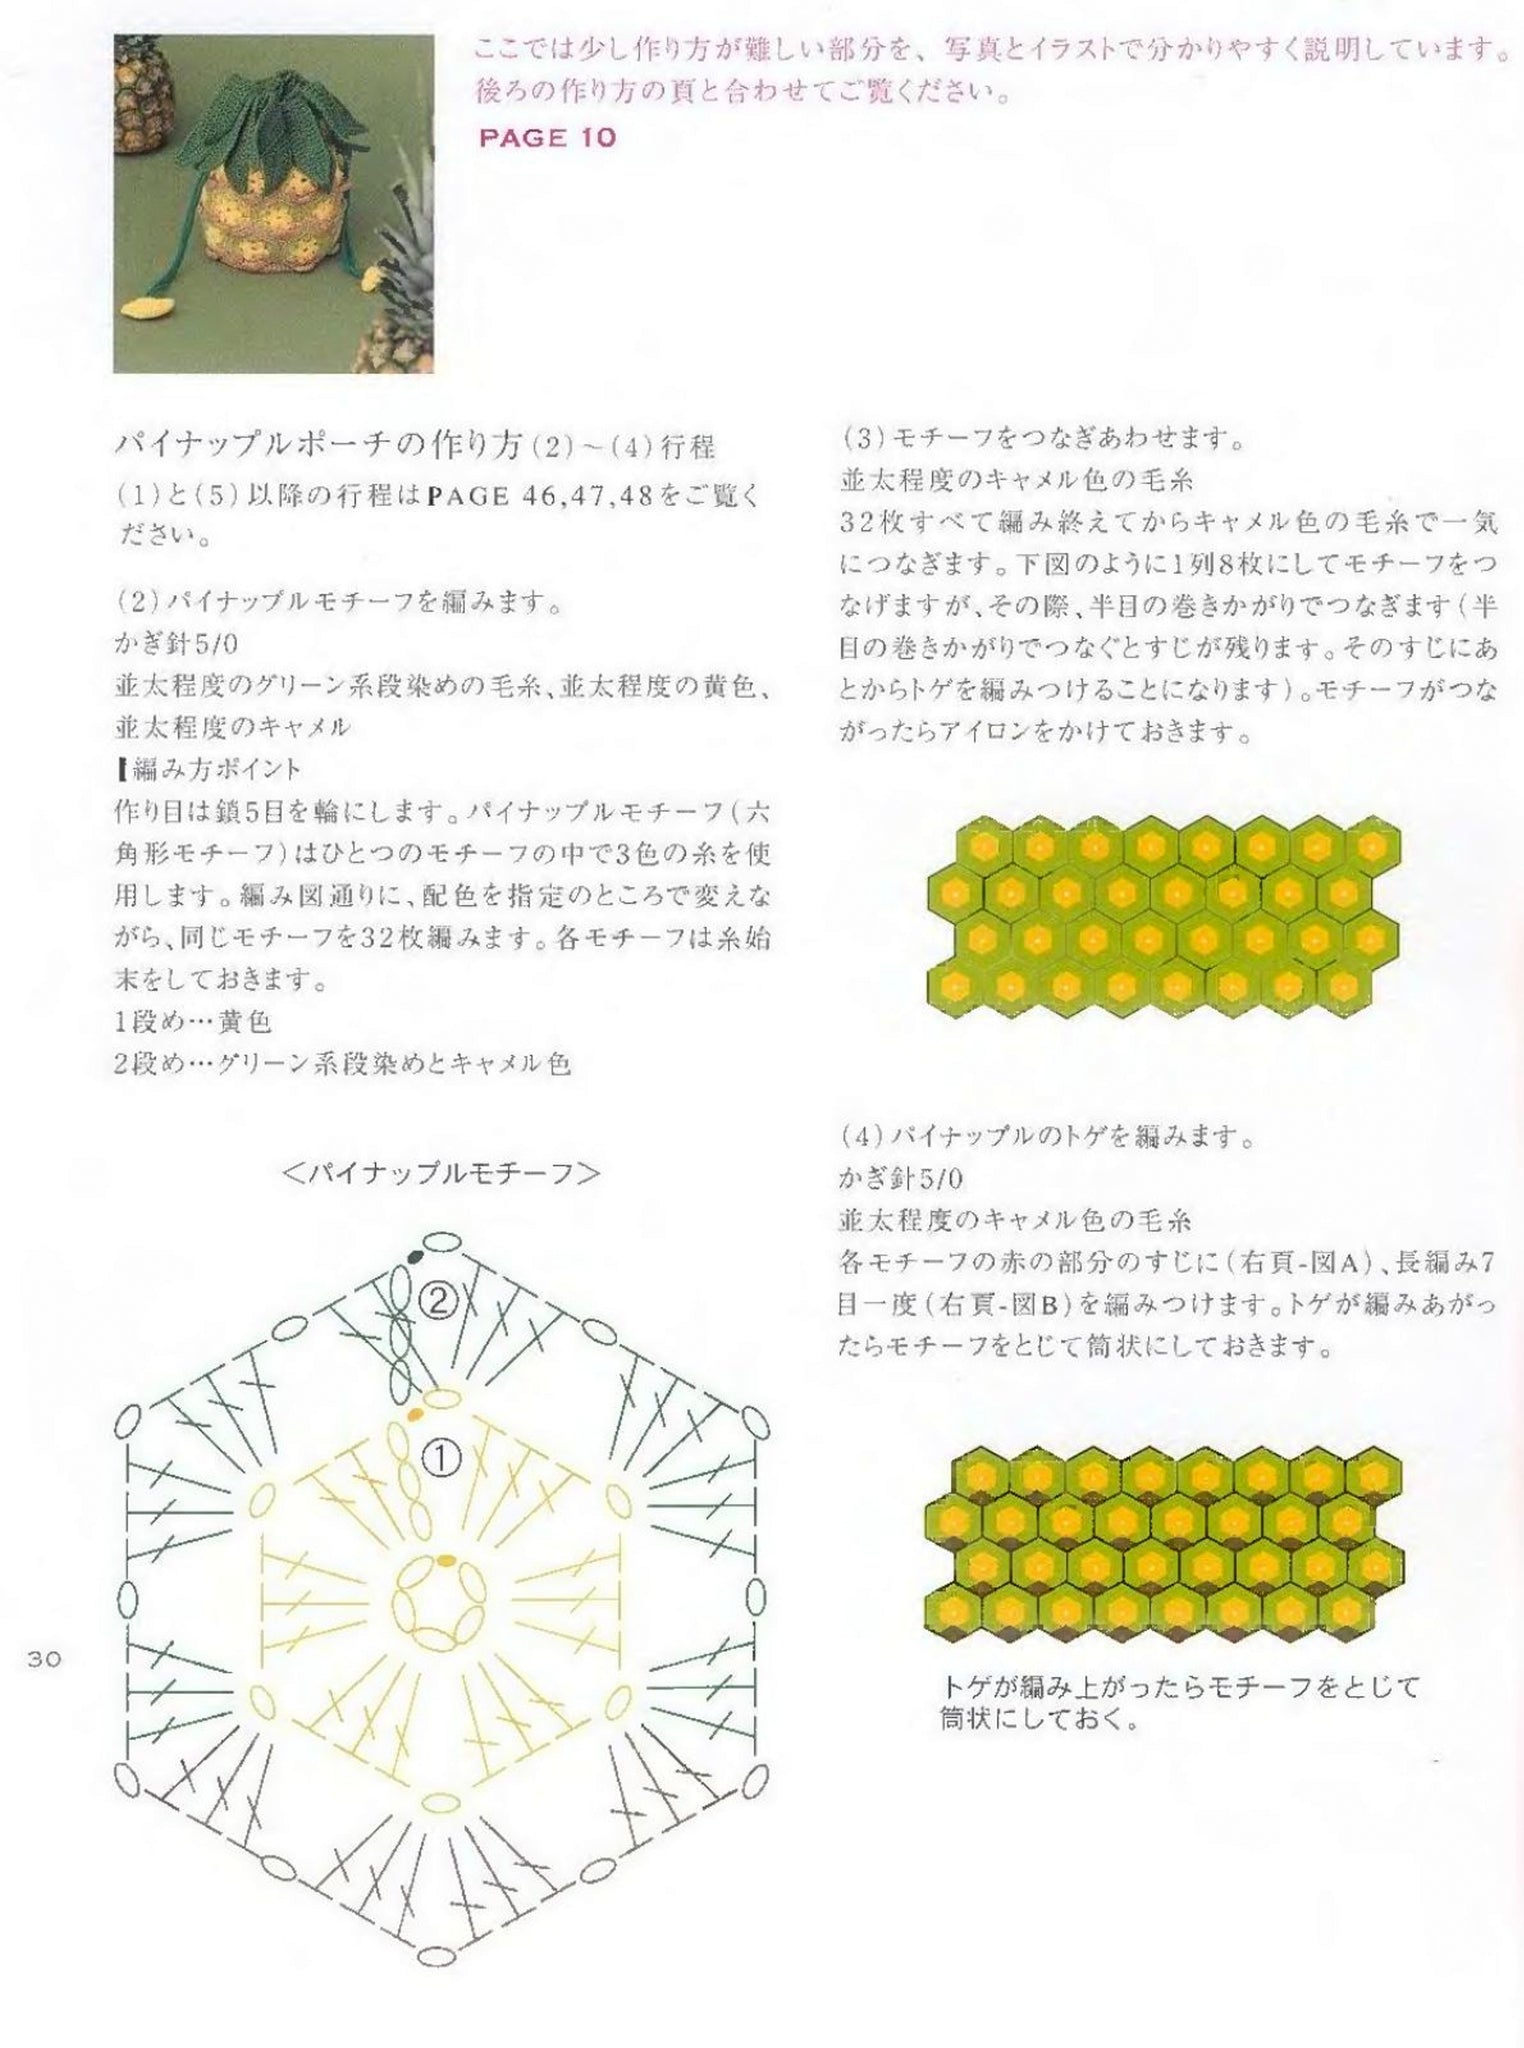 Pineapple crochet bag pattern